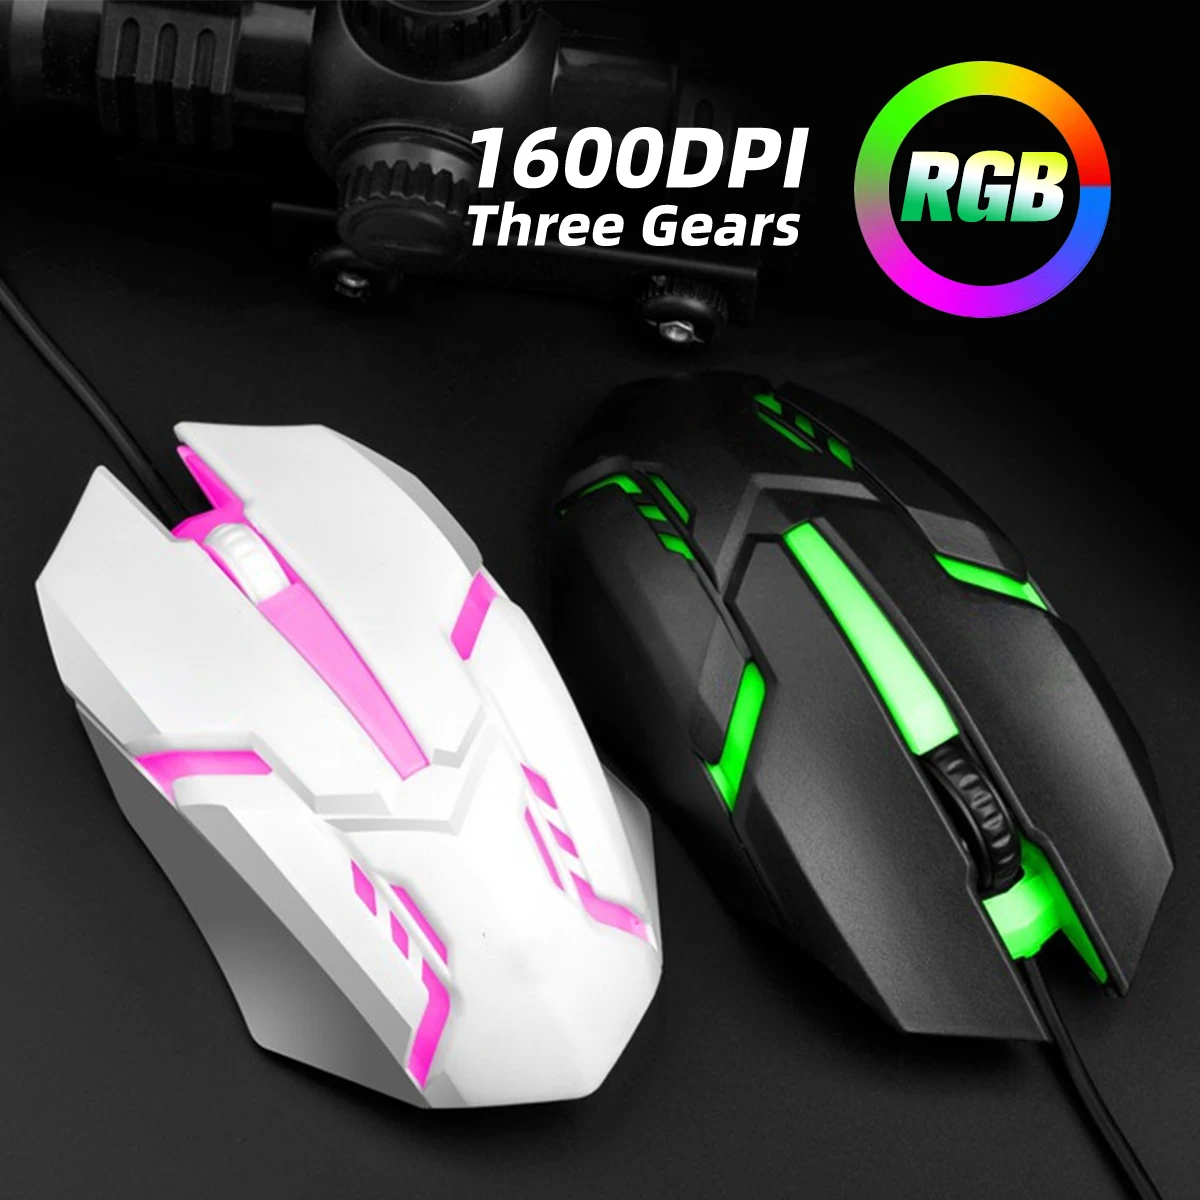 

Проводная игровая мышь 1600 DPI Оптическая USB-мышь с RGB-подсветкой Мыши Эргономичная мышь Mause для настольного портативного компьютера Gamer Mouse